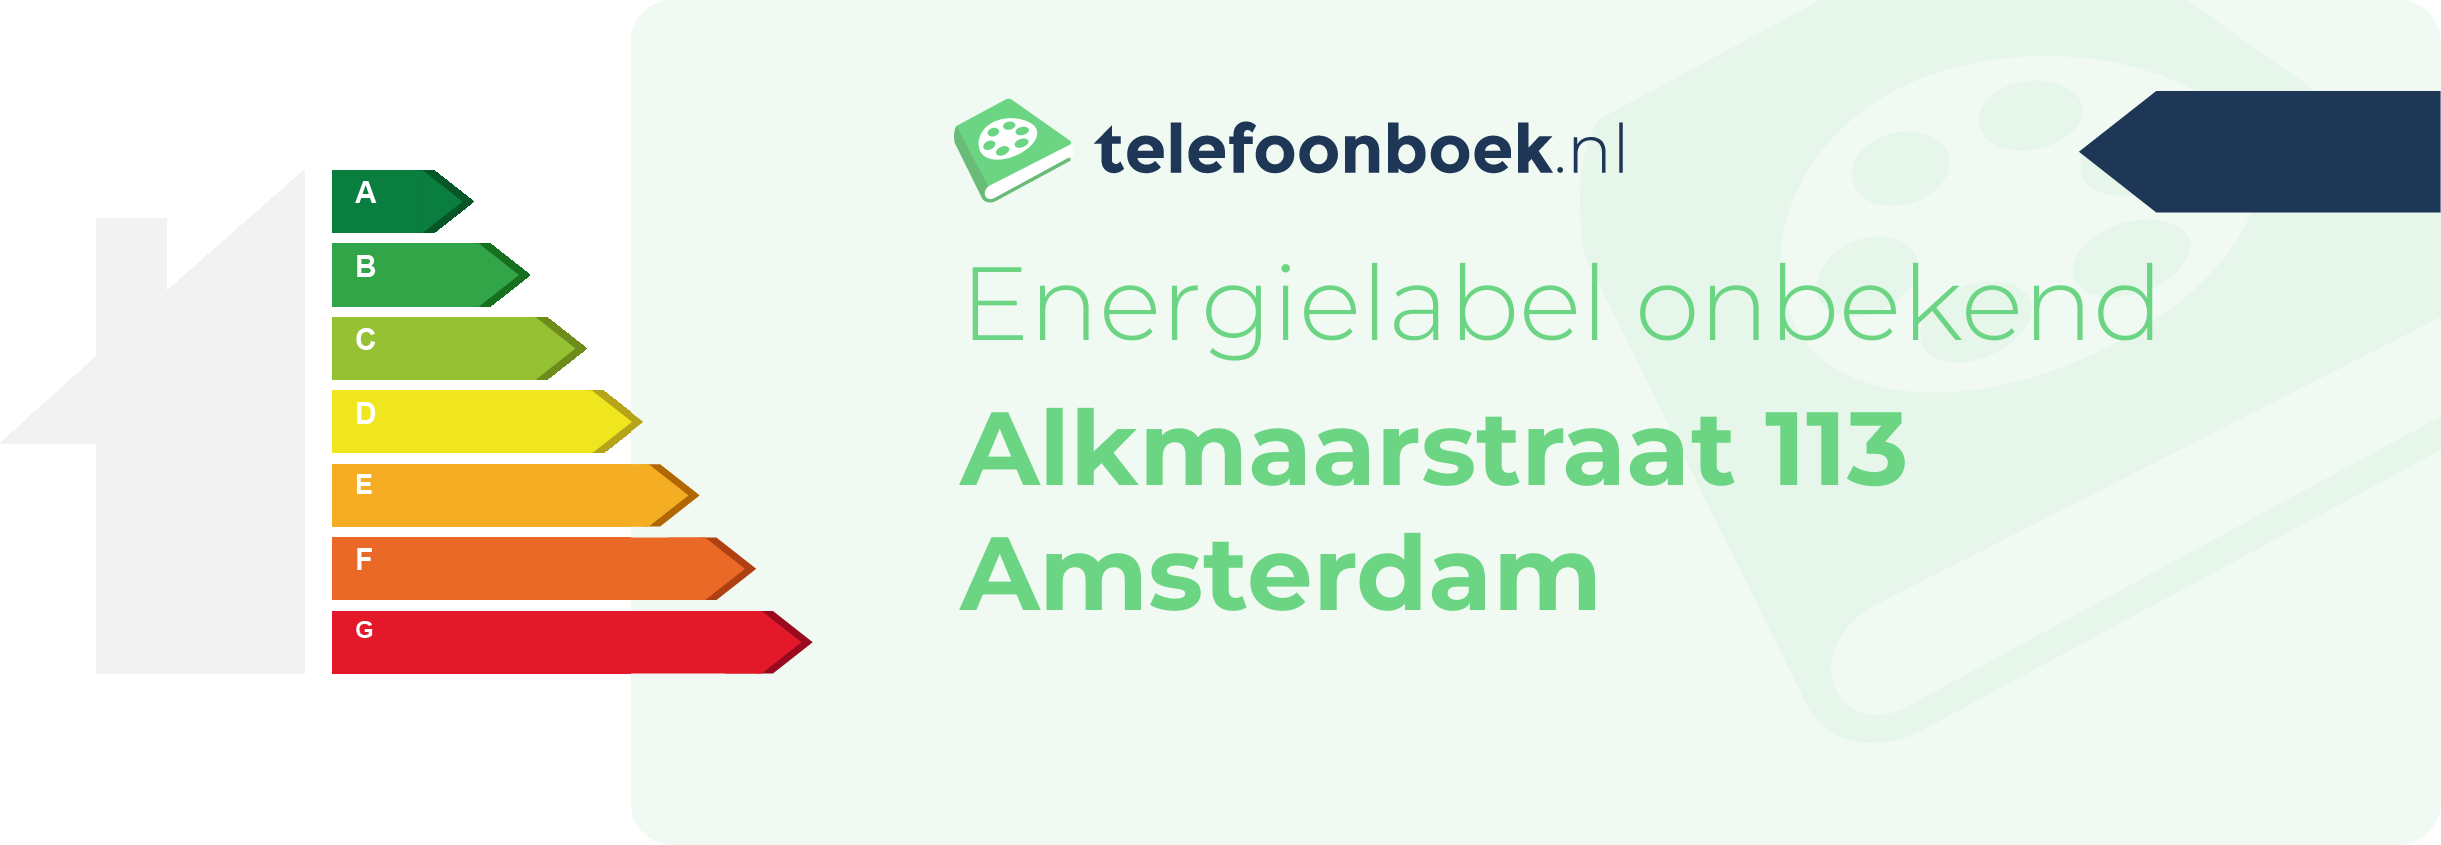 Energielabel Alkmaarstraat 113 Amsterdam